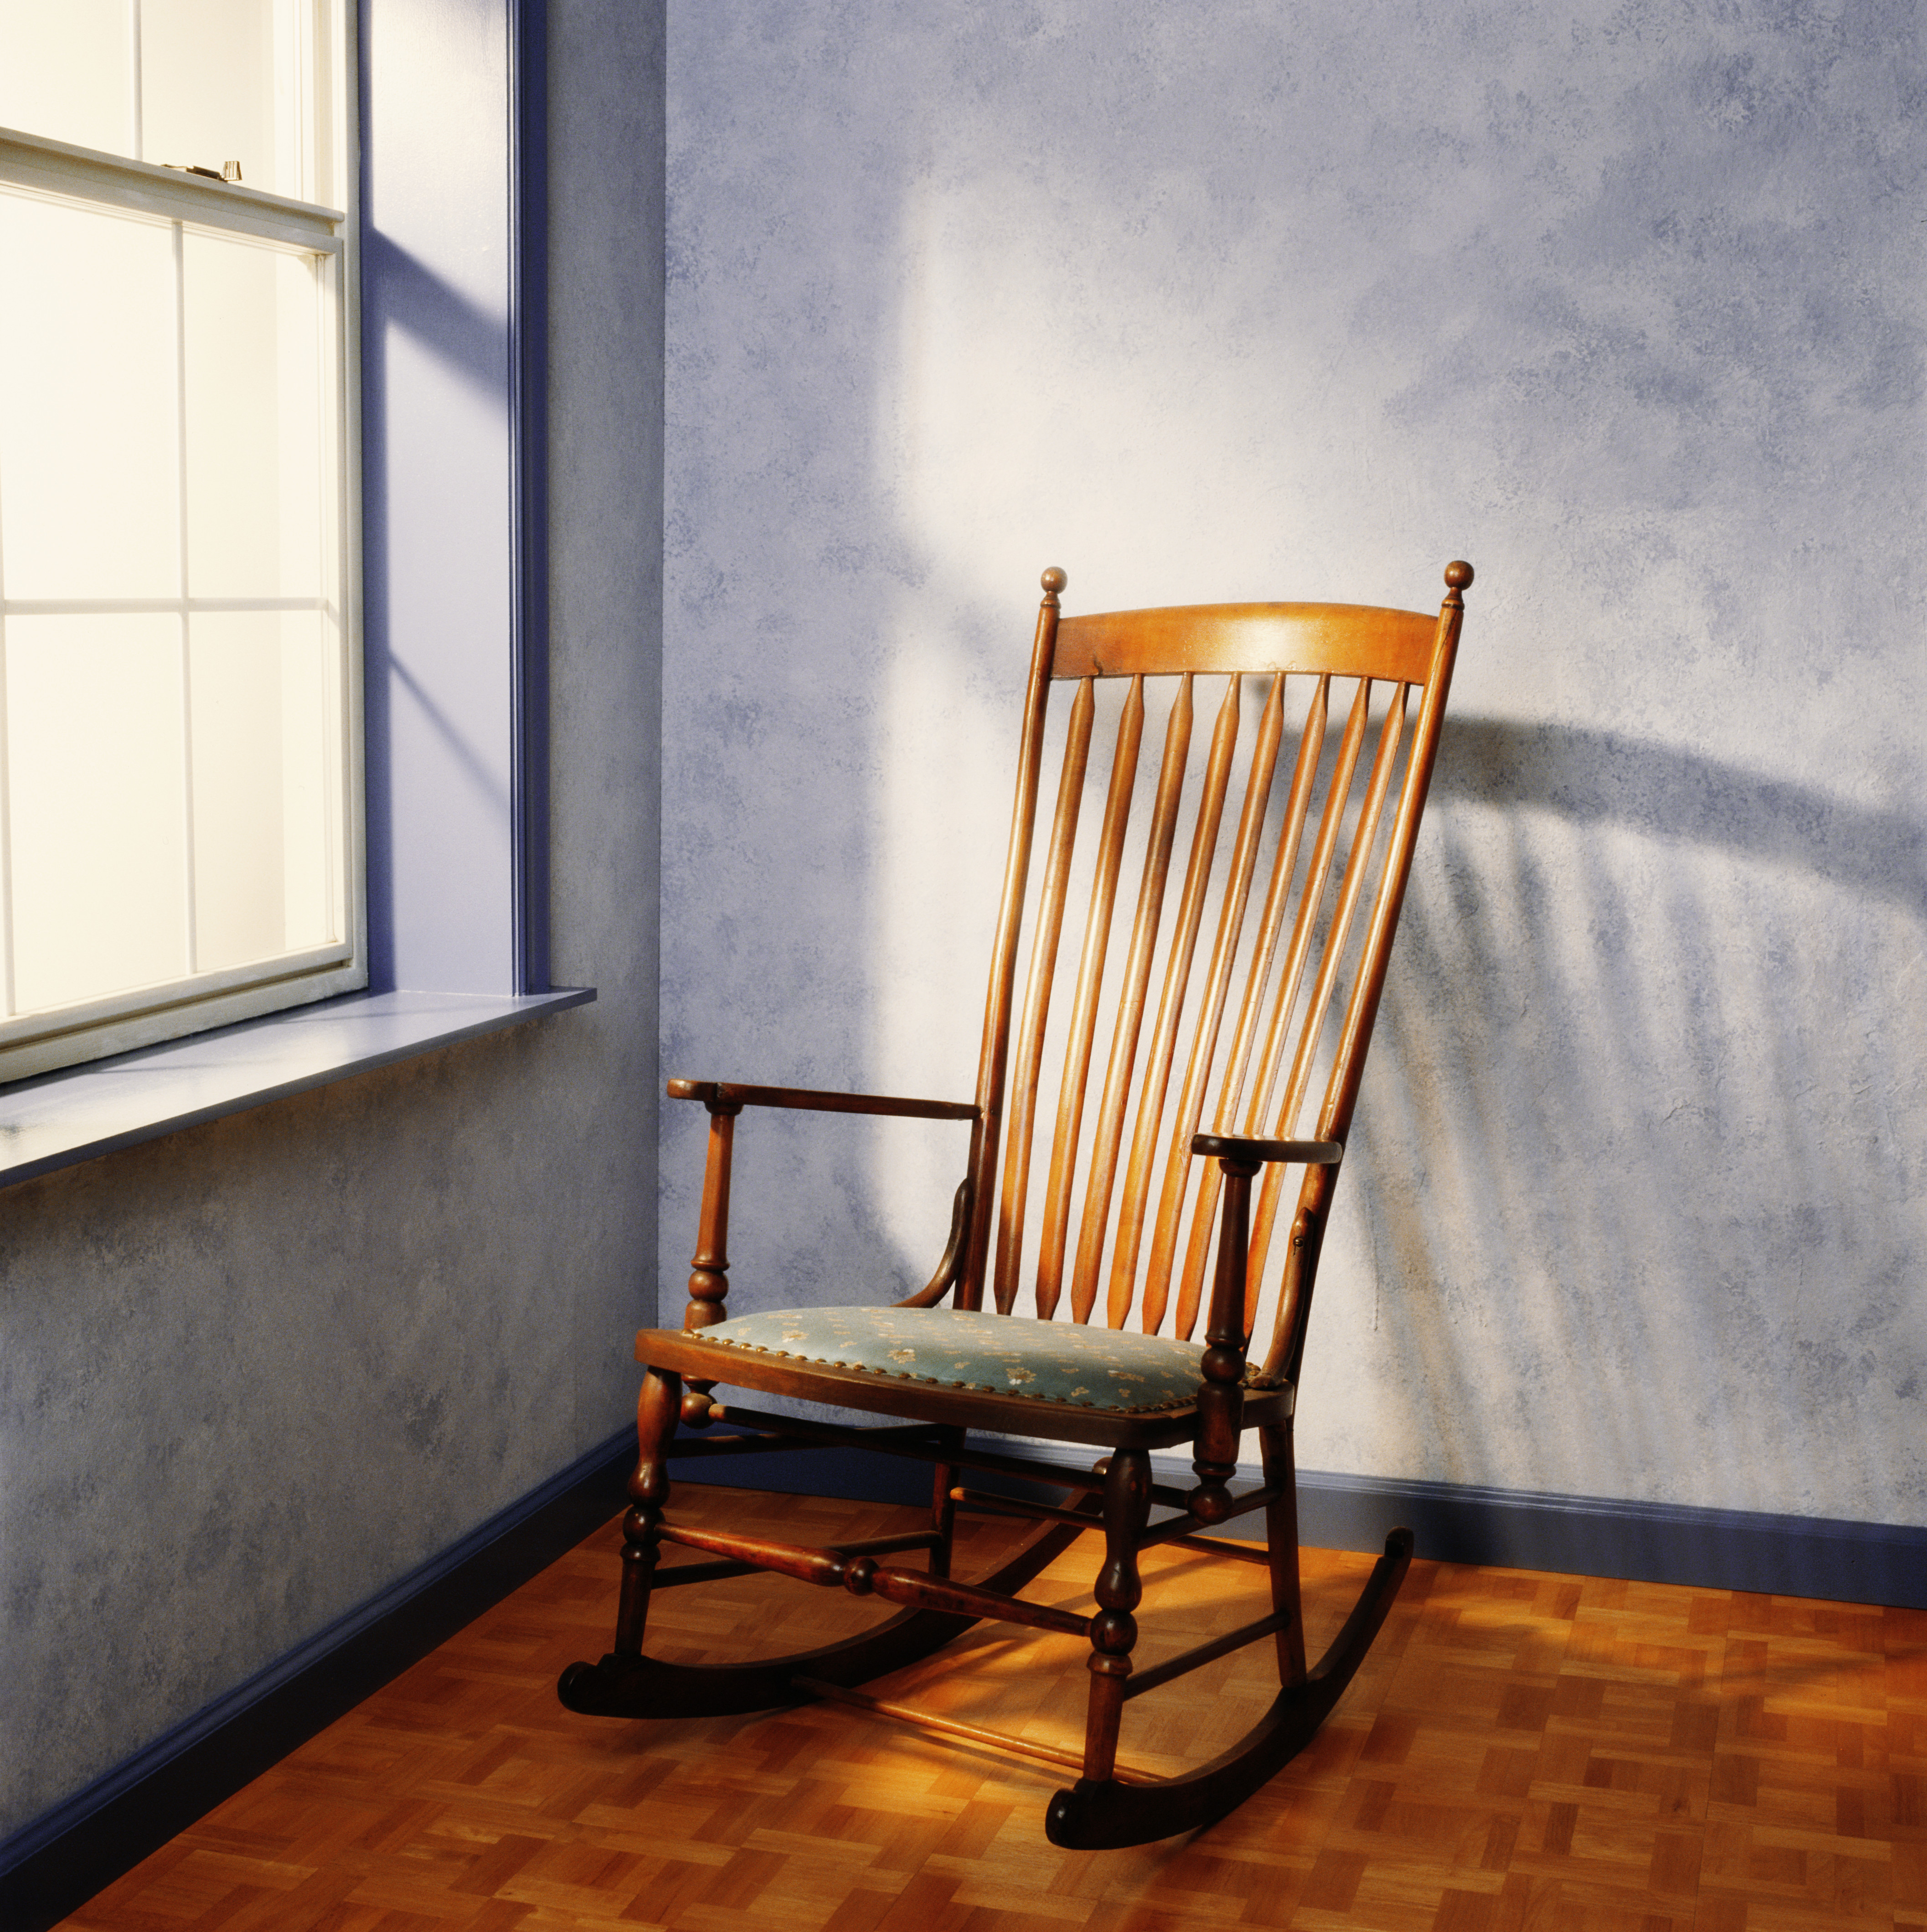 Une chaise à bascule vide près d'une fenêtre | Source : Getty Images